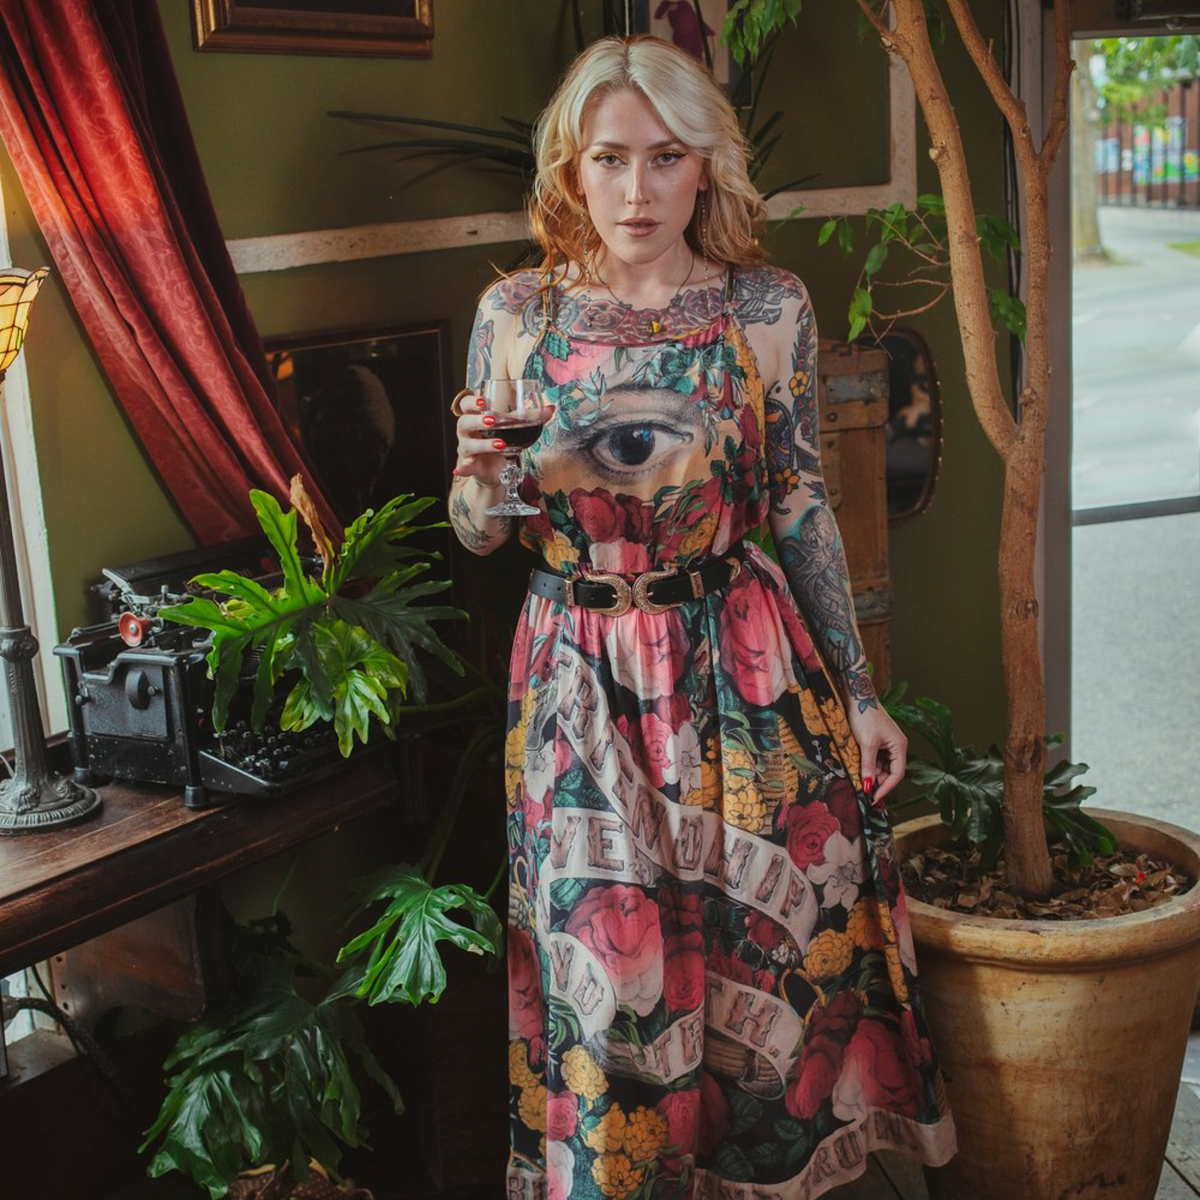 Hippie Dress: For Love, Not For War – BGL - online store women's